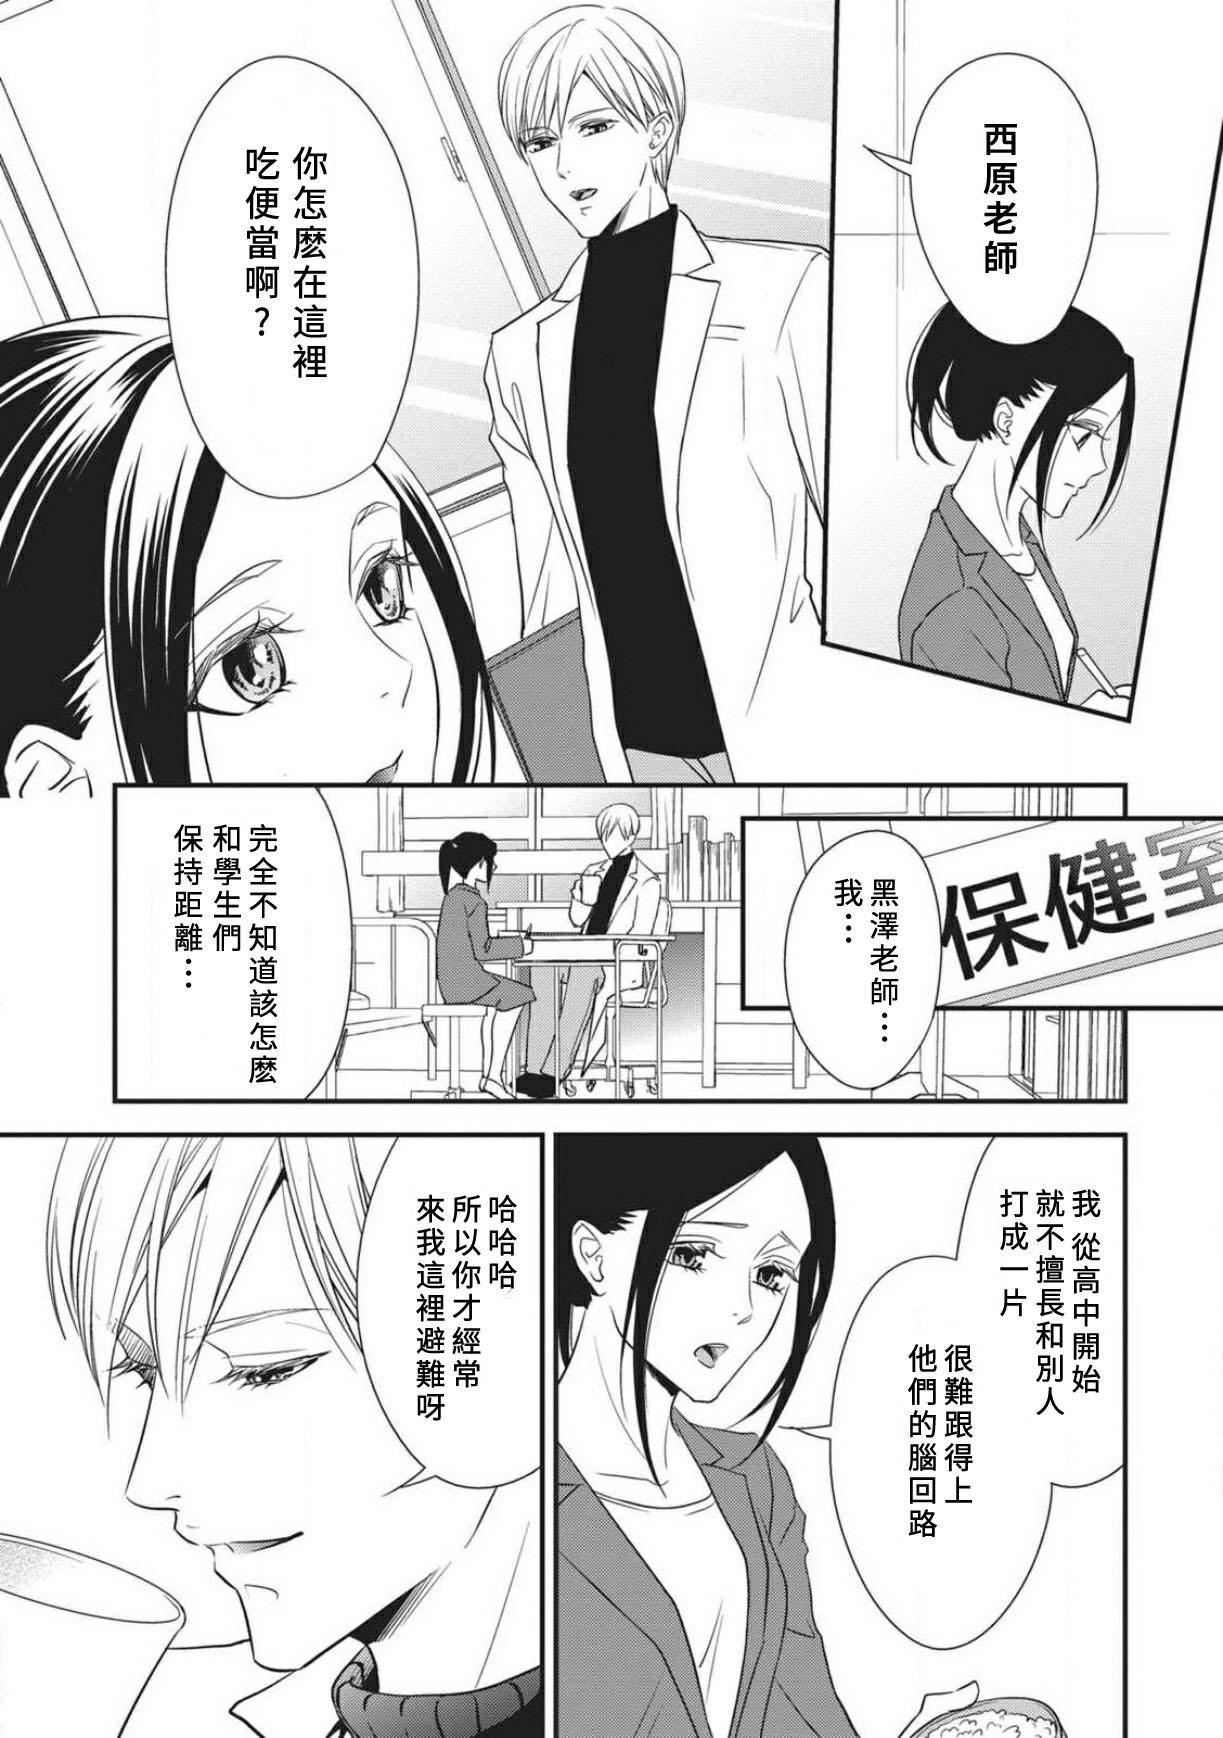 Chaturbate Watashi no hoken no sensei | 我的保健老师 Mediumtits - Page 9